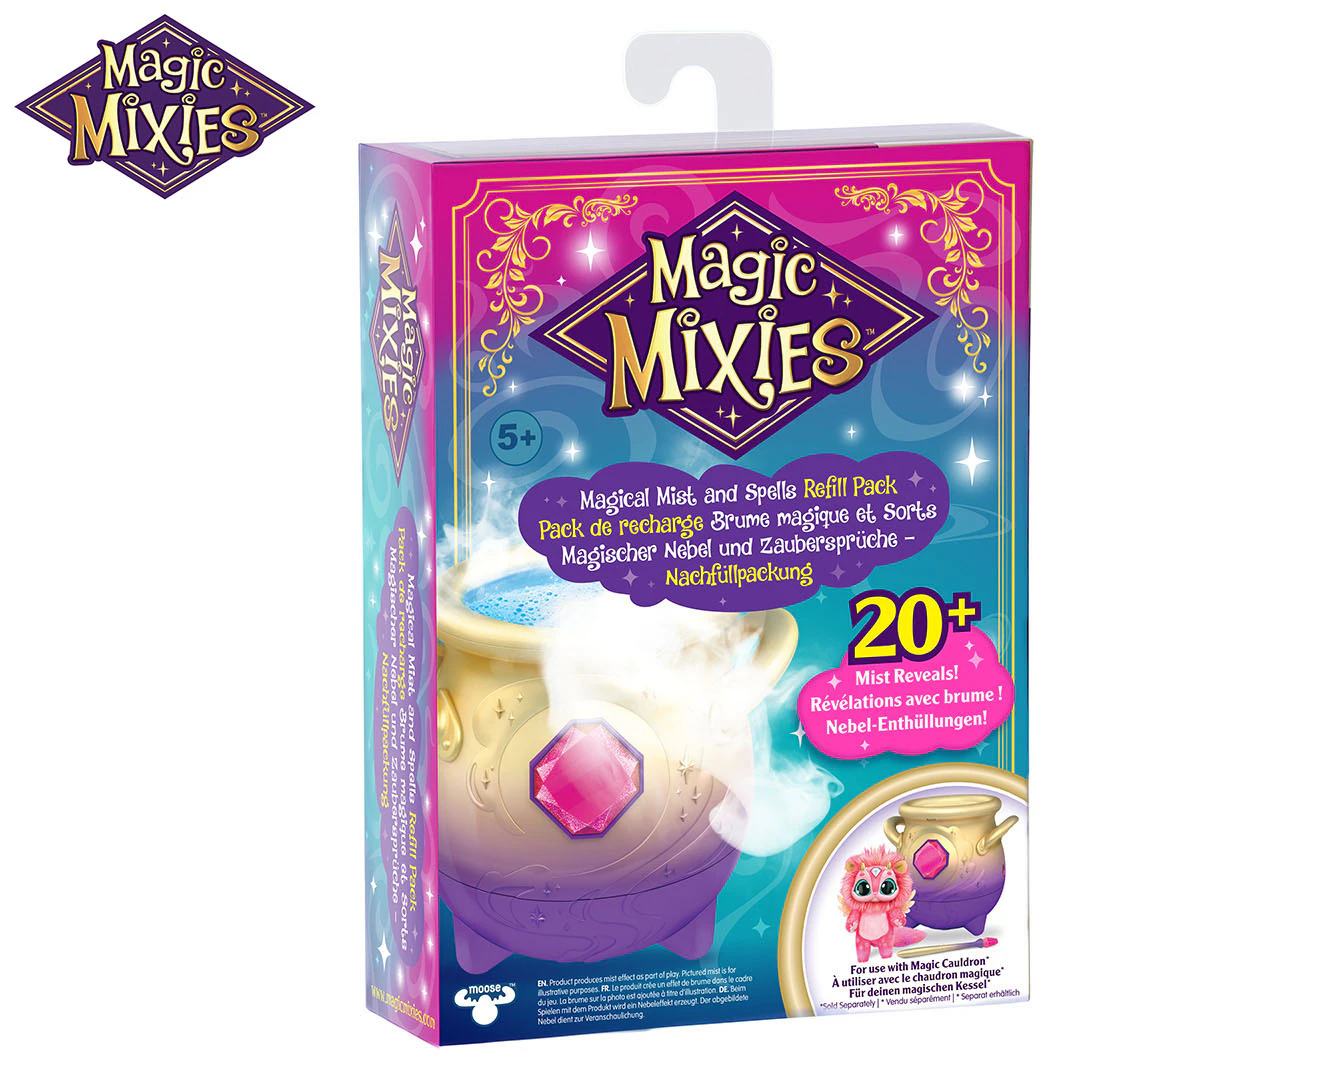 Magic Mixies Mega Magic Cauldron Pack - Assorted